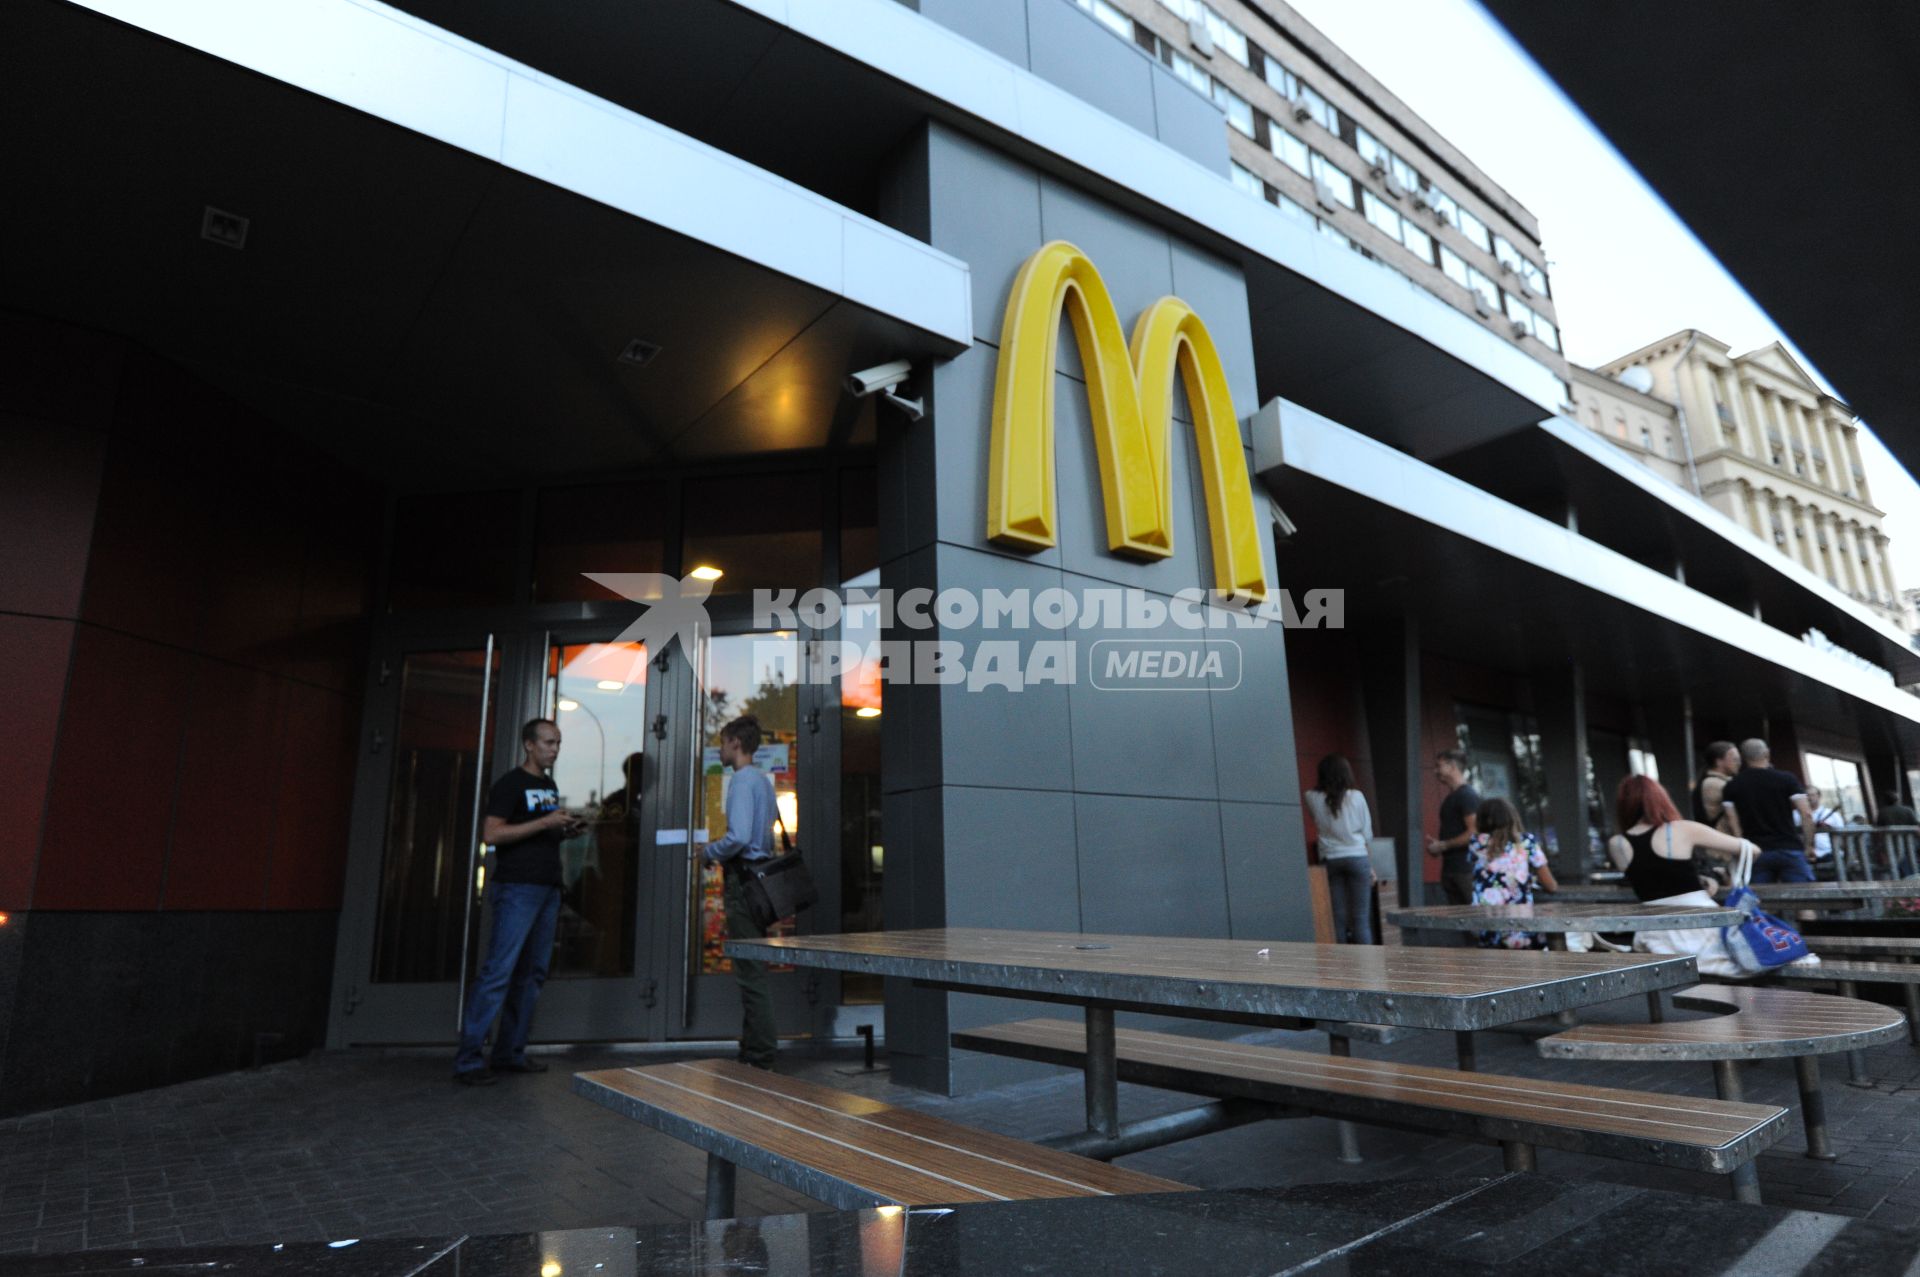 Ресторан `Макдоналдс` на улице Большая Бронная д. 29 (на углу Пушкинской площади) закрытый в среду в ходе проверки Роспотребнадзором.